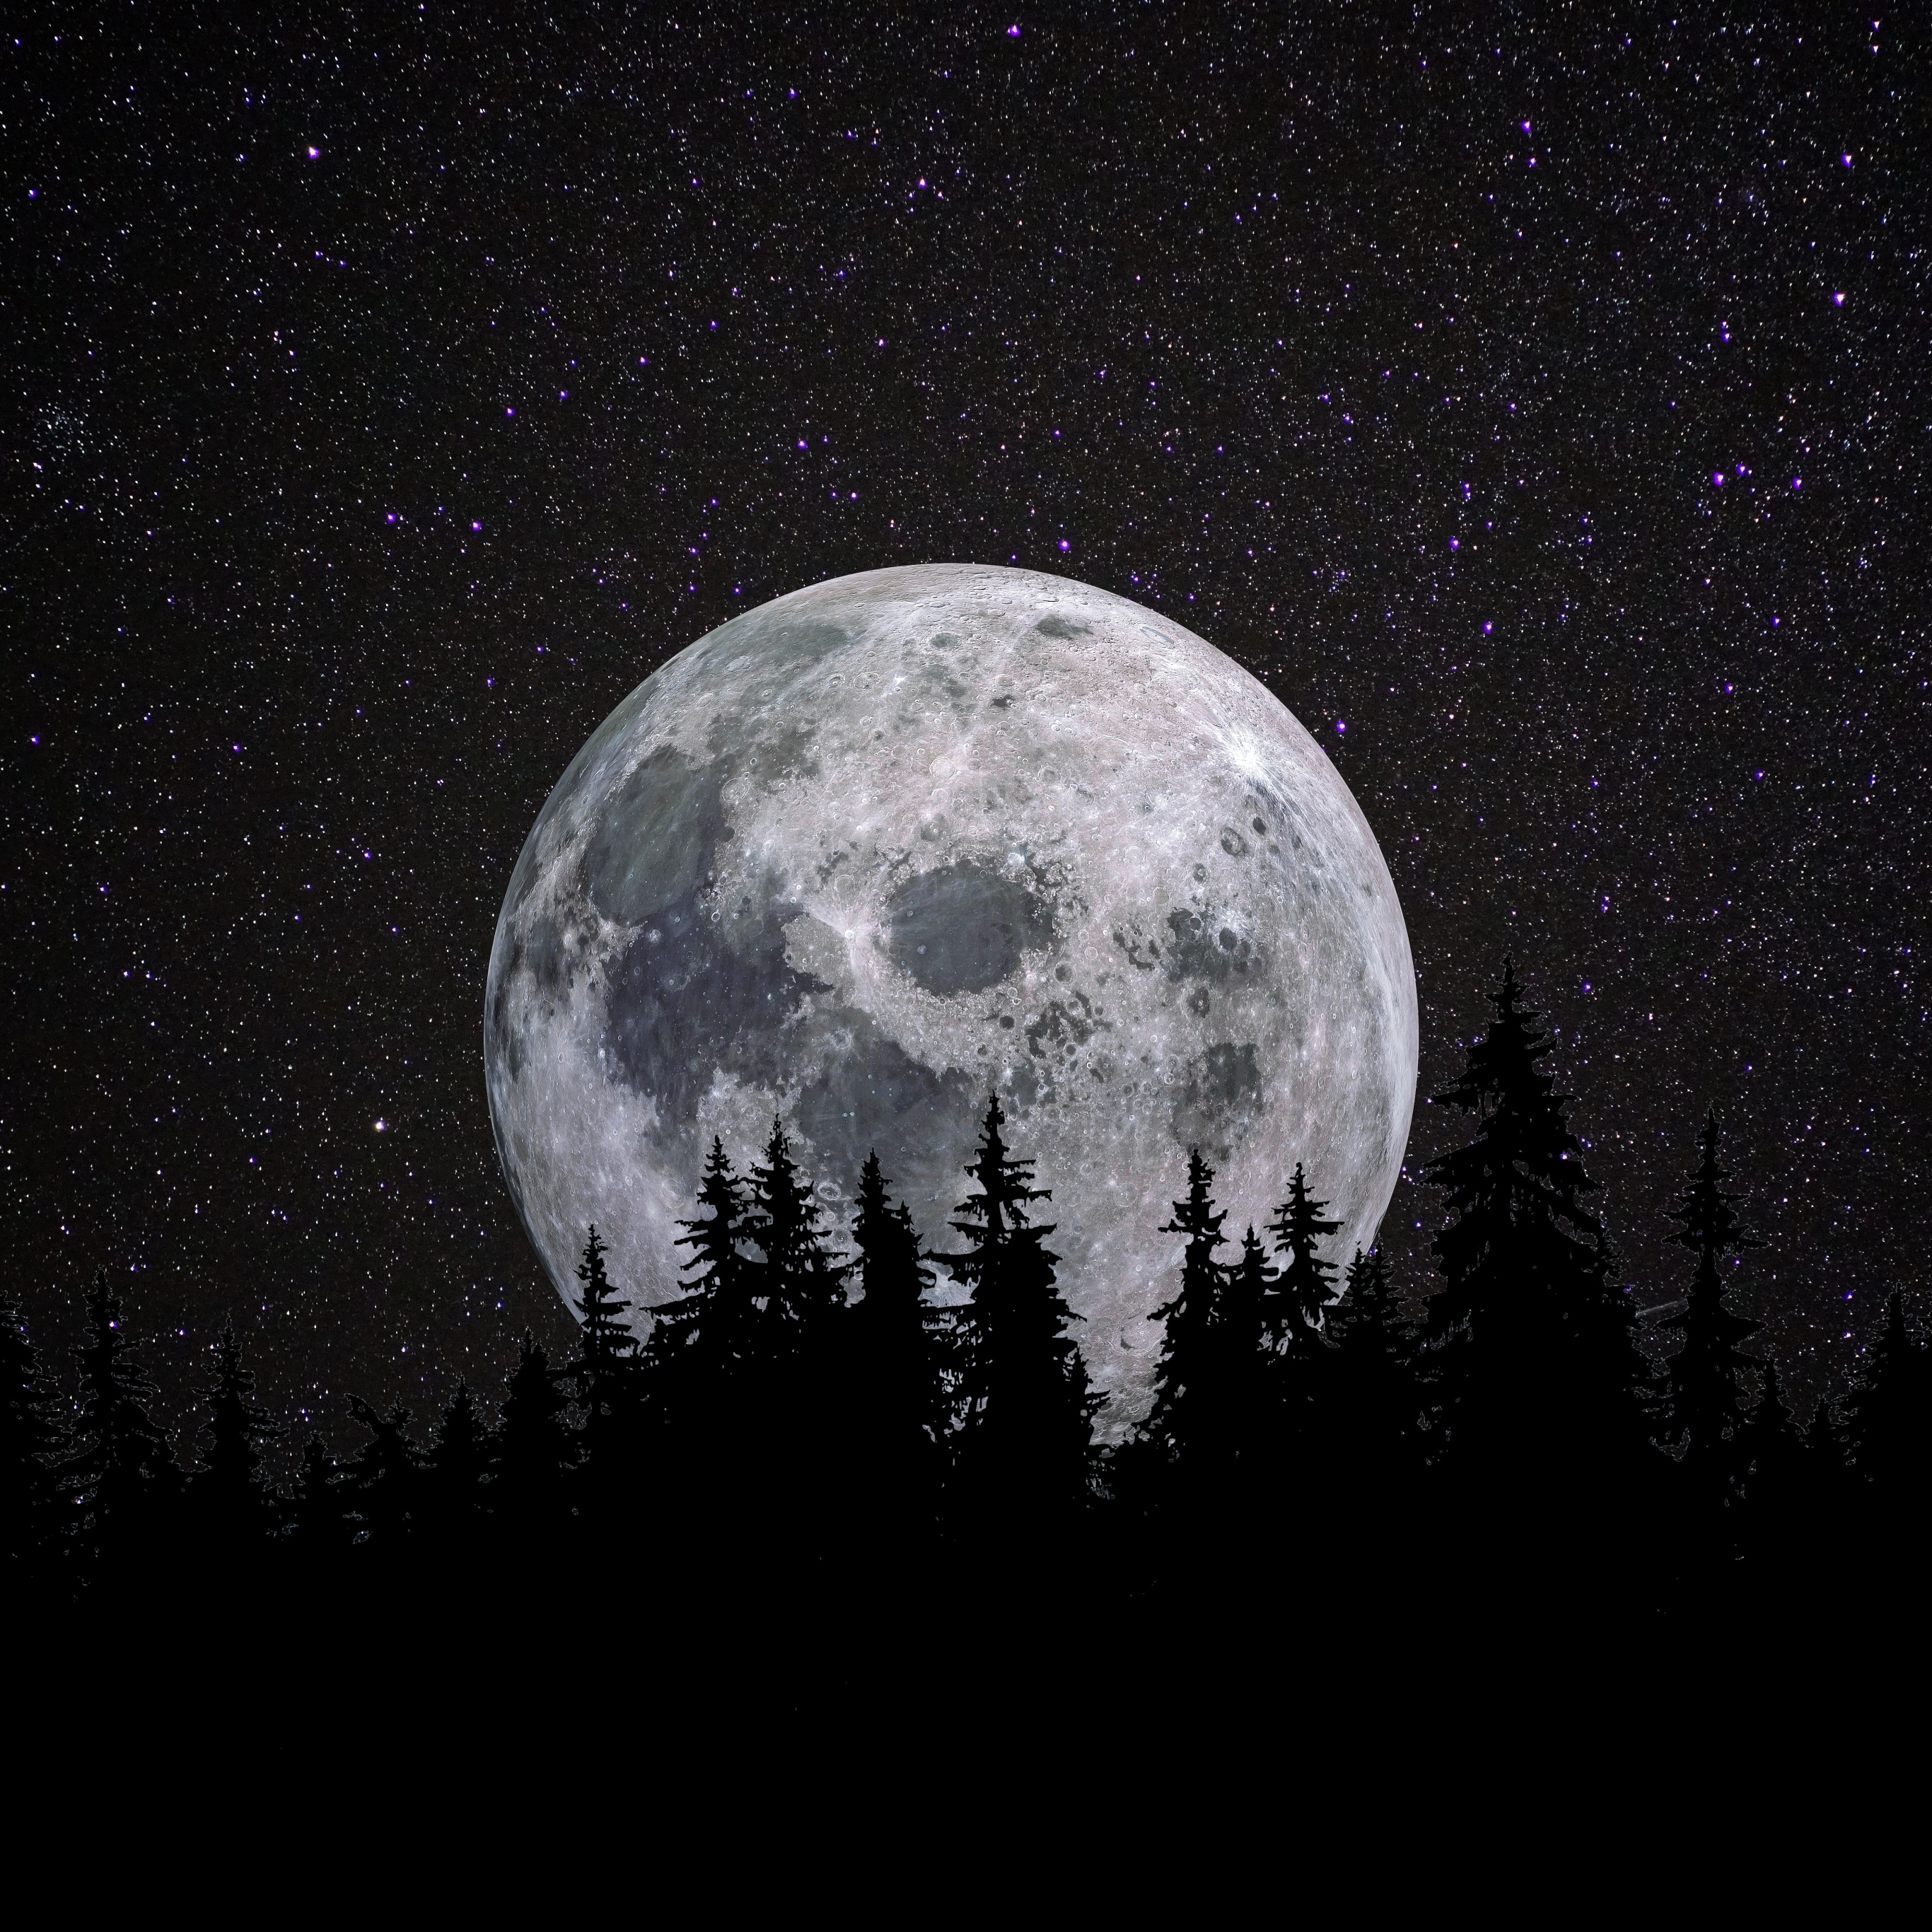 Bạn yêu thích tận hưởng vẻ đẹp của mặt trăng khi tròn đầy? Hãy ngắm nhìn bức tranh Mặt trăng tròn đầy đầy sáng tạo với các bóng cây khác màu sắc tuyệt đẹp. Wallpaper này sẽ đem đến cho bạn cảm giác thư thái và bình yên.